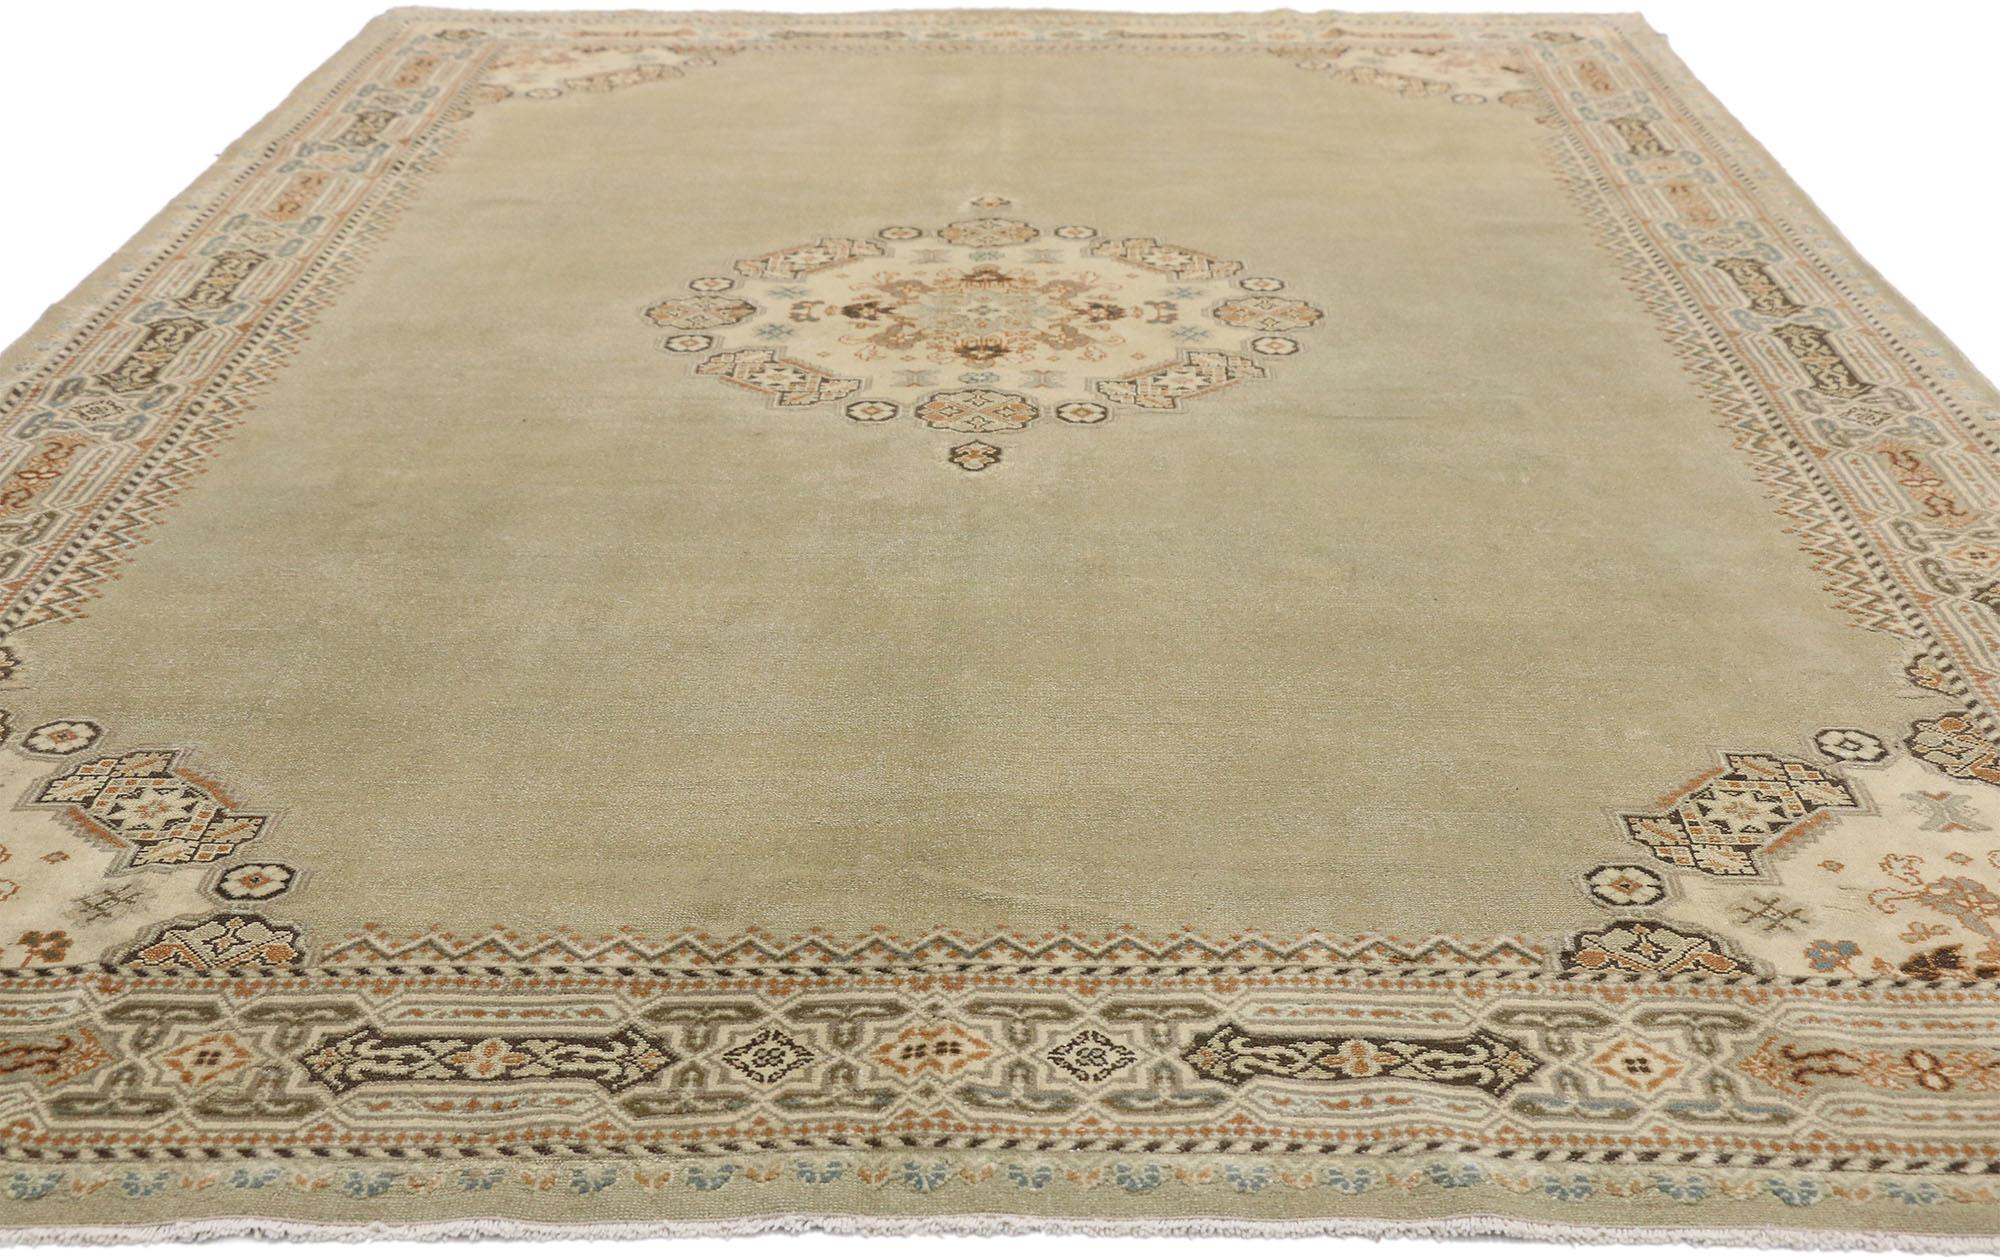 52495 Antiker persischer Malayer-Teppich mit eklektischem Pariser und Arts & Crafts-Stil. Dieser handgeknüpfte antike persische Malayer-Teppich aus Wolle zeigt einen eklektischen Pariser und Arts & Crafts-Stil. Ein rundes Medaillon, bestehend aus